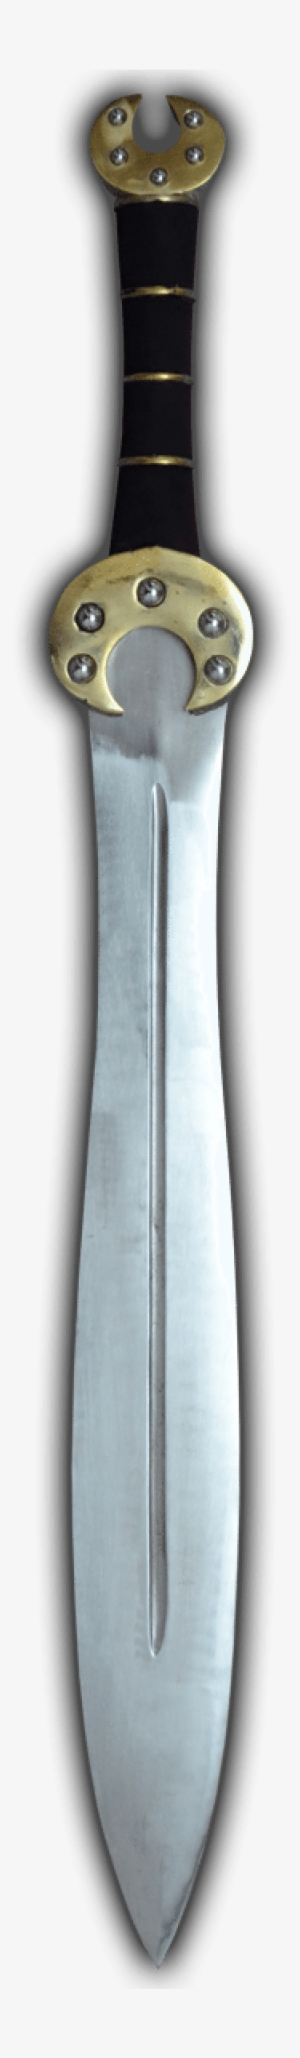 Espada Celta De Las Dos Lunas - Dagger